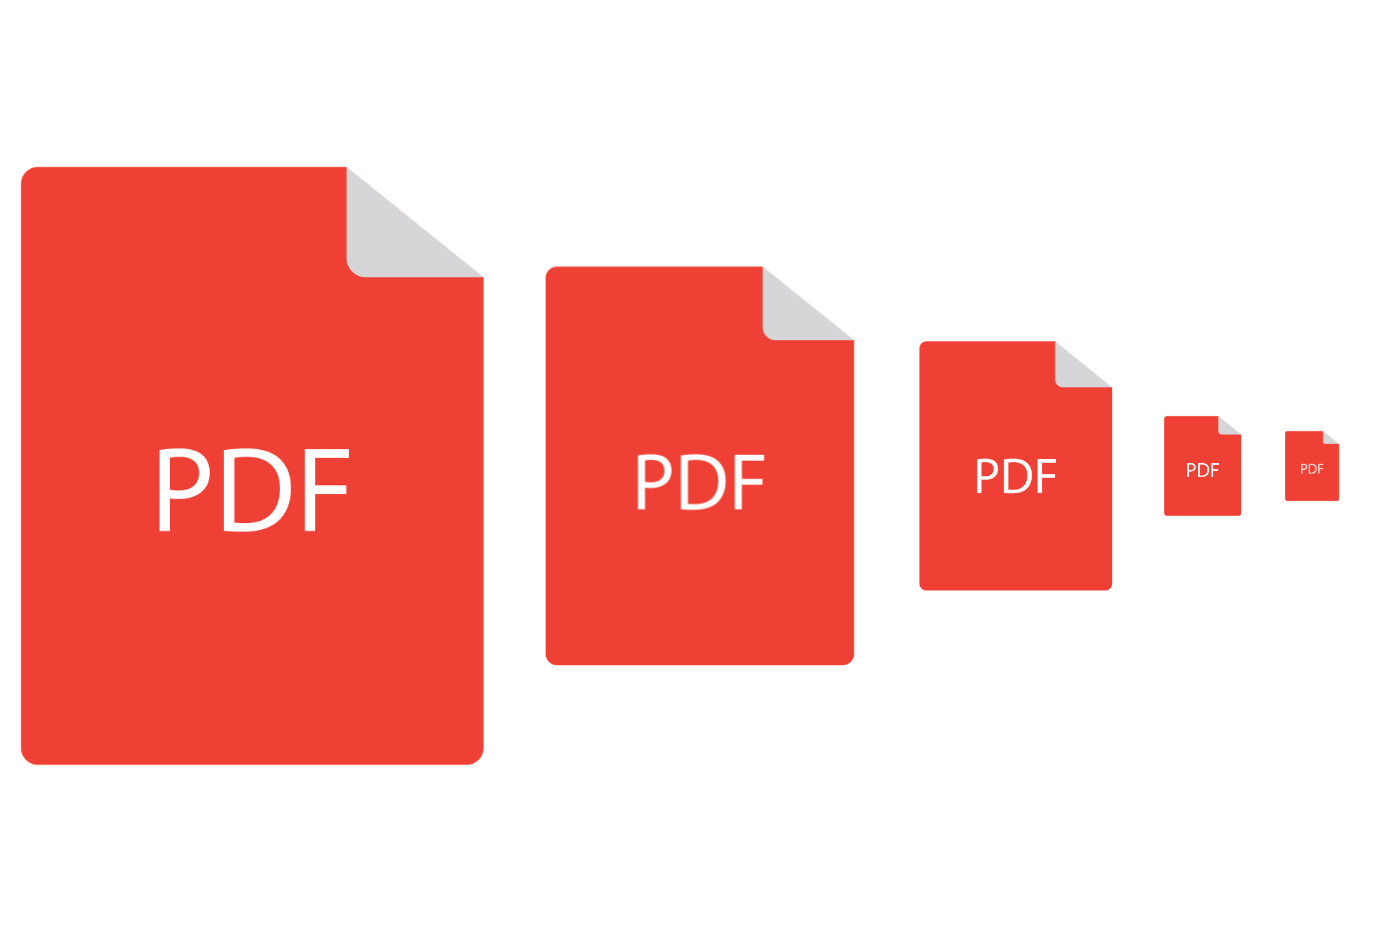 Comment réduire la taille d’un fichier PDF ?